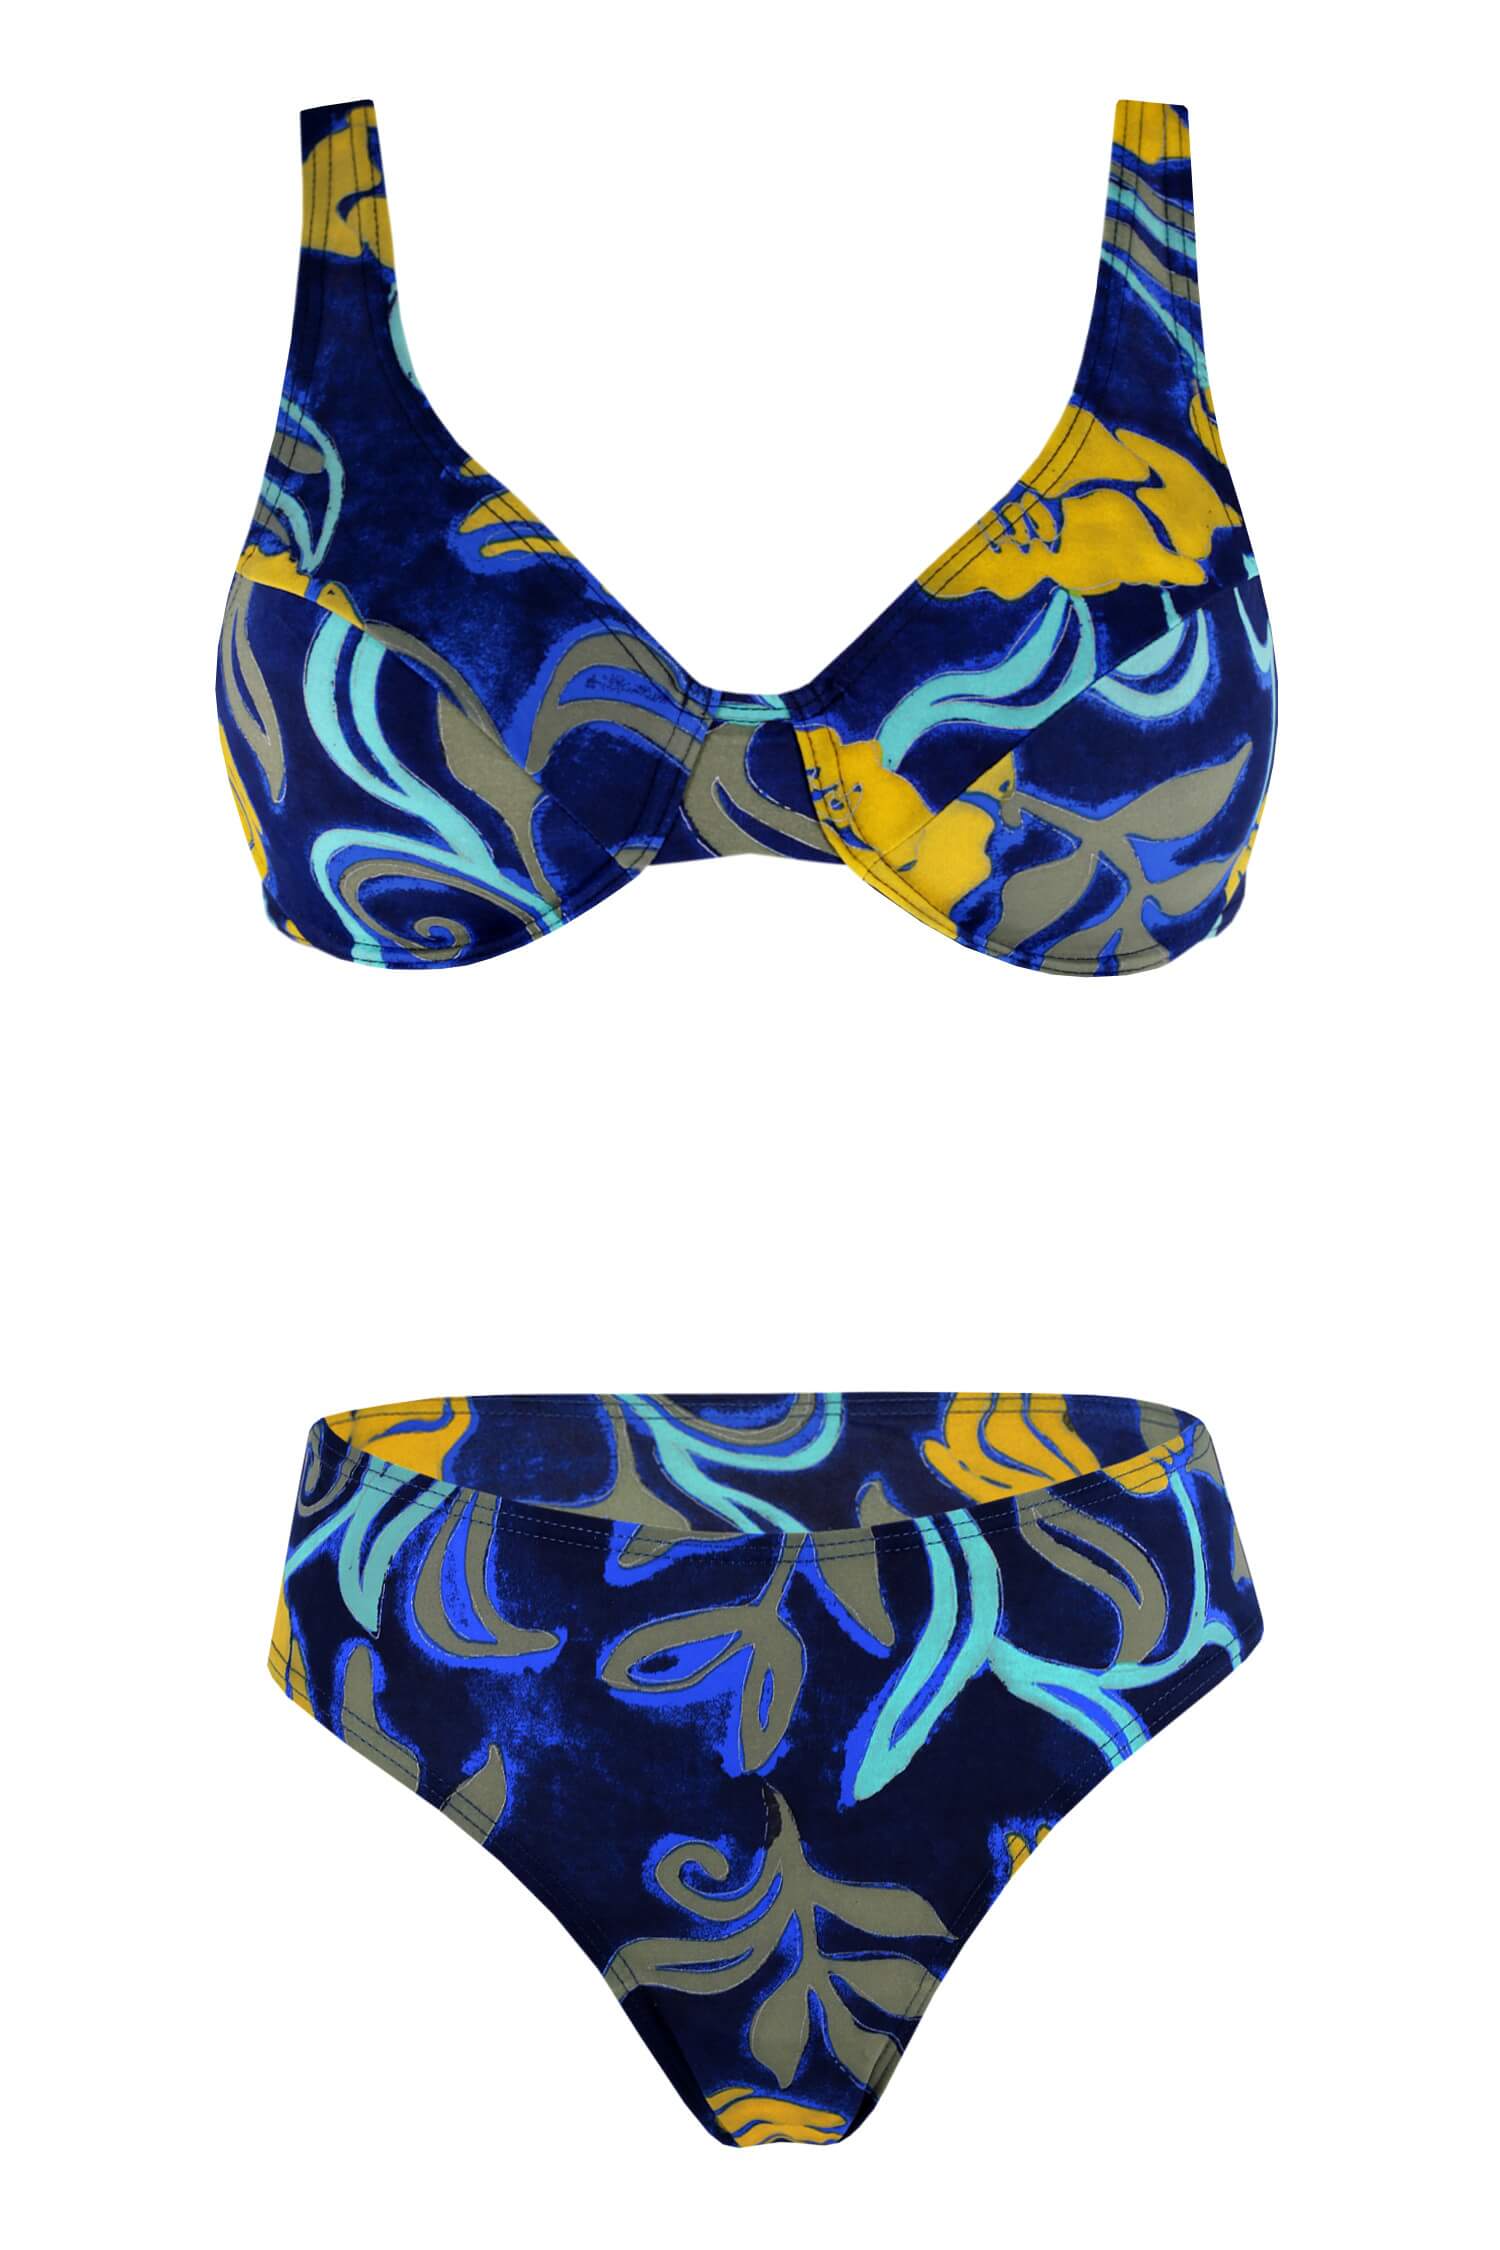 Marbela dámské plavky bez výztuže L tmavě modrá